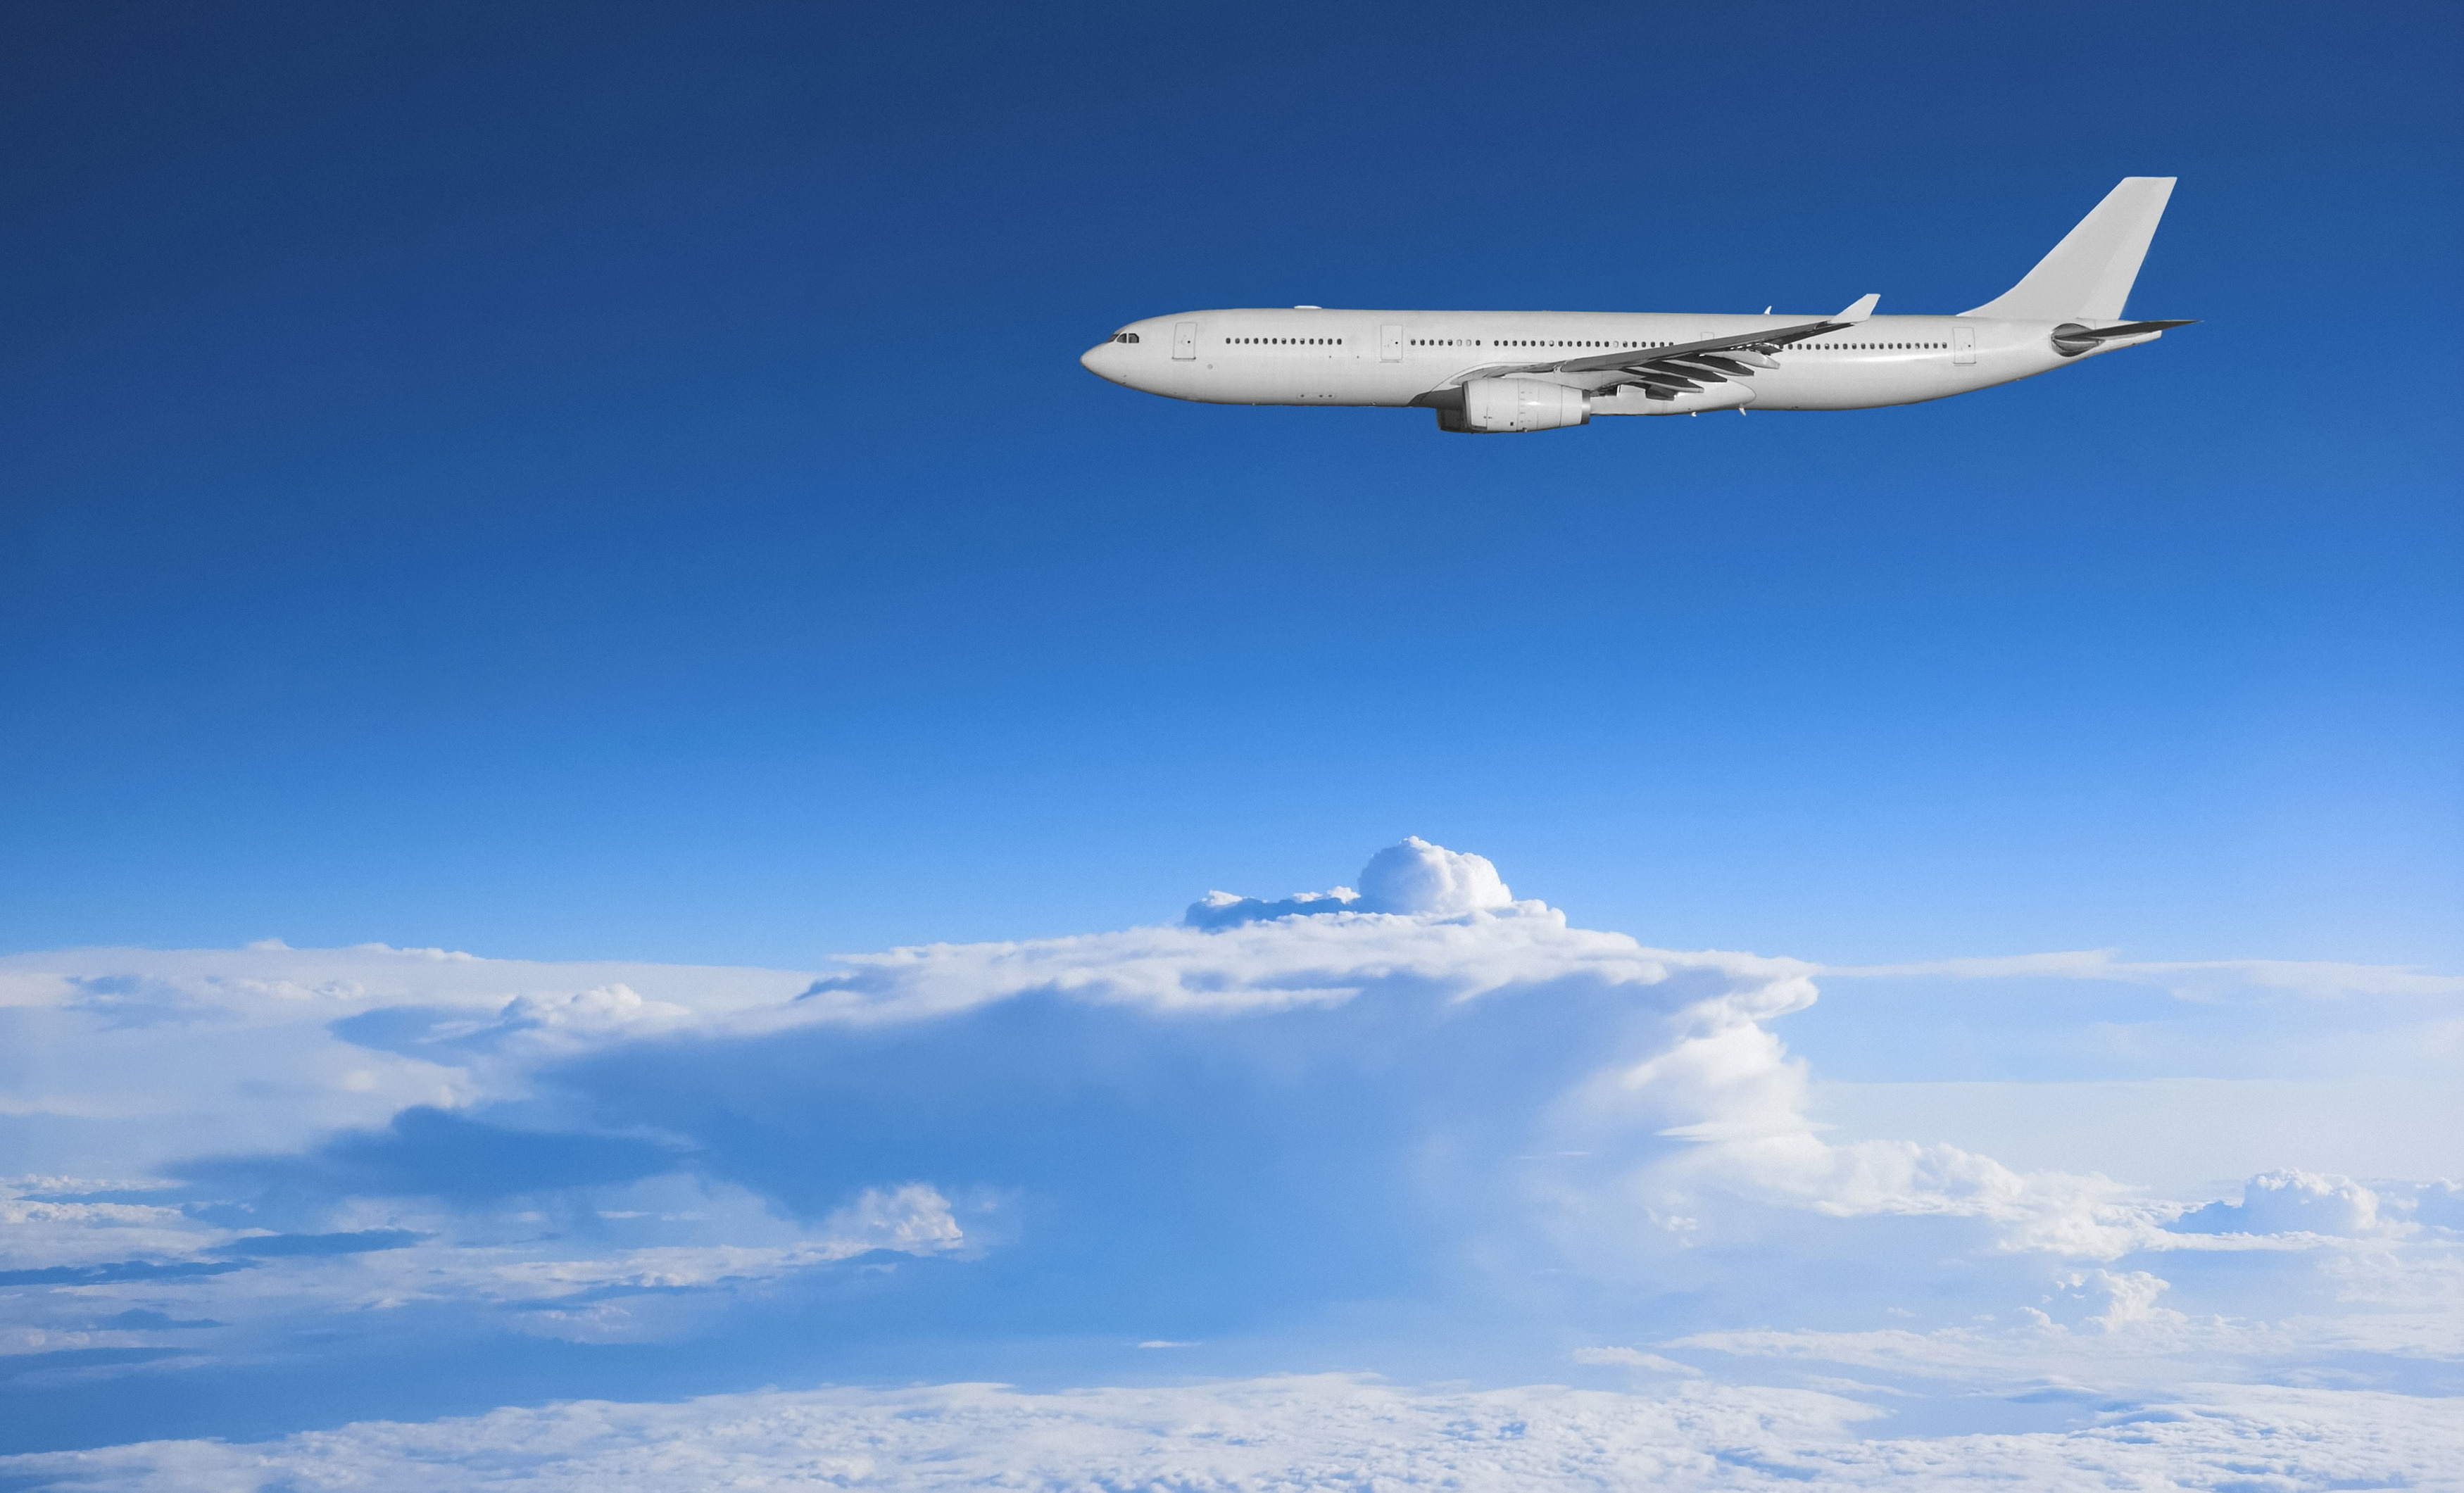 Wallpaper Aircraft Plane Clouds Blue Sky Desktop